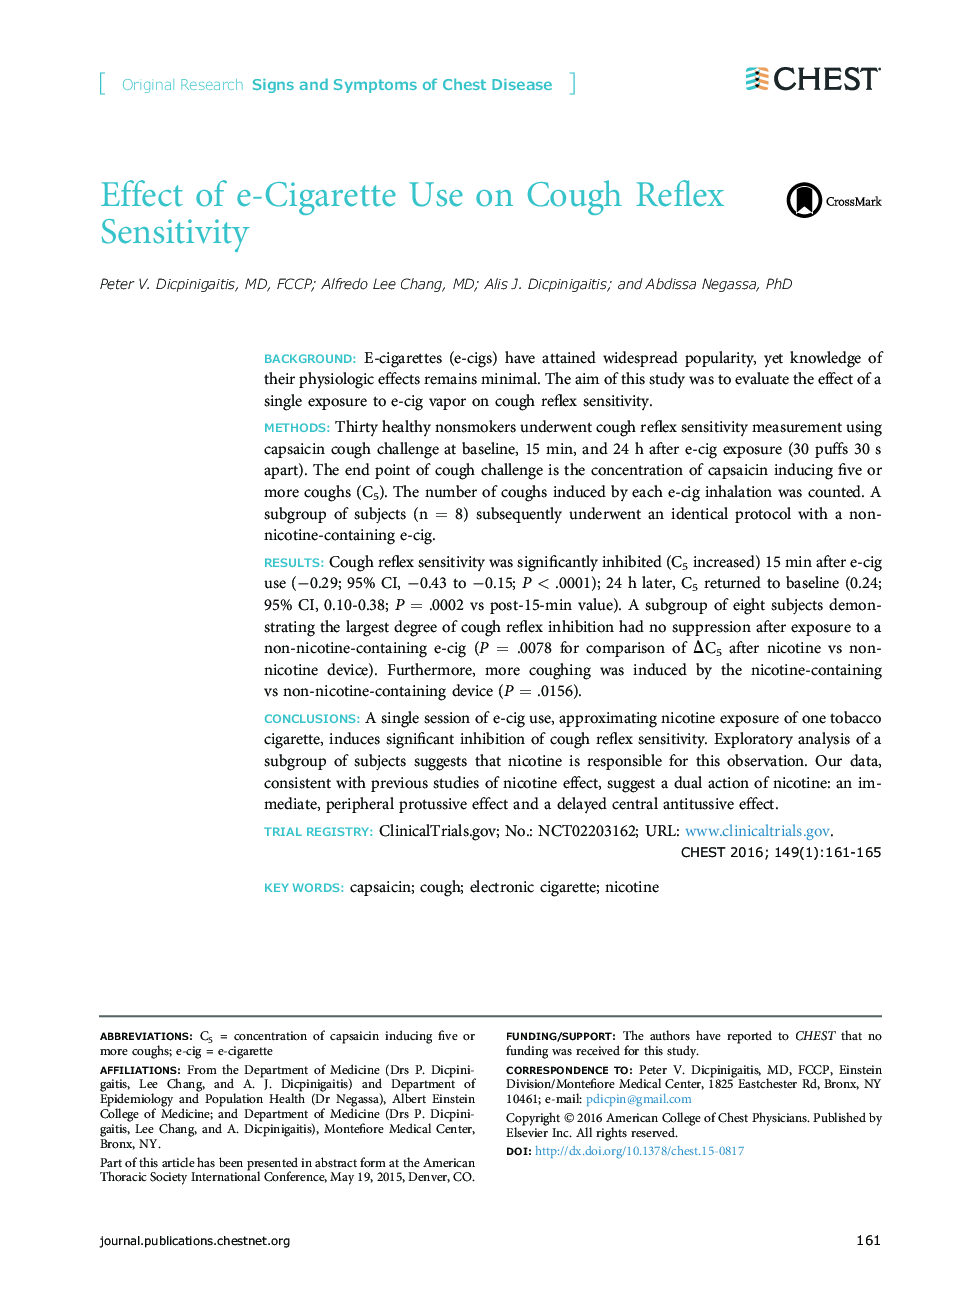 اثر مصرف سیگار در حساسیت رفلکس سرفه 